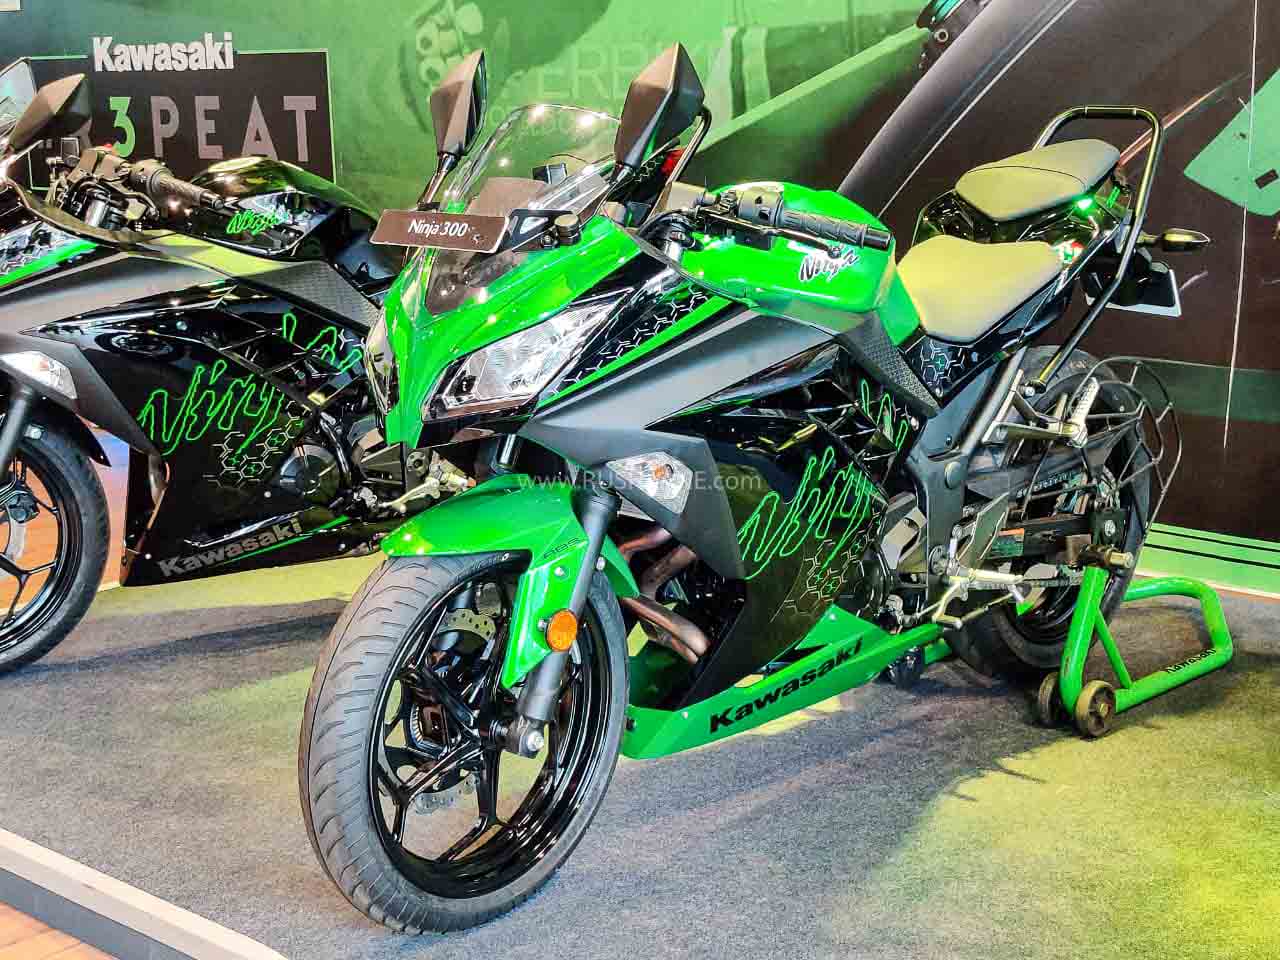 2021 Kawasaki Ninja 300 Online Bookings Via Amazon India At Rs 3k